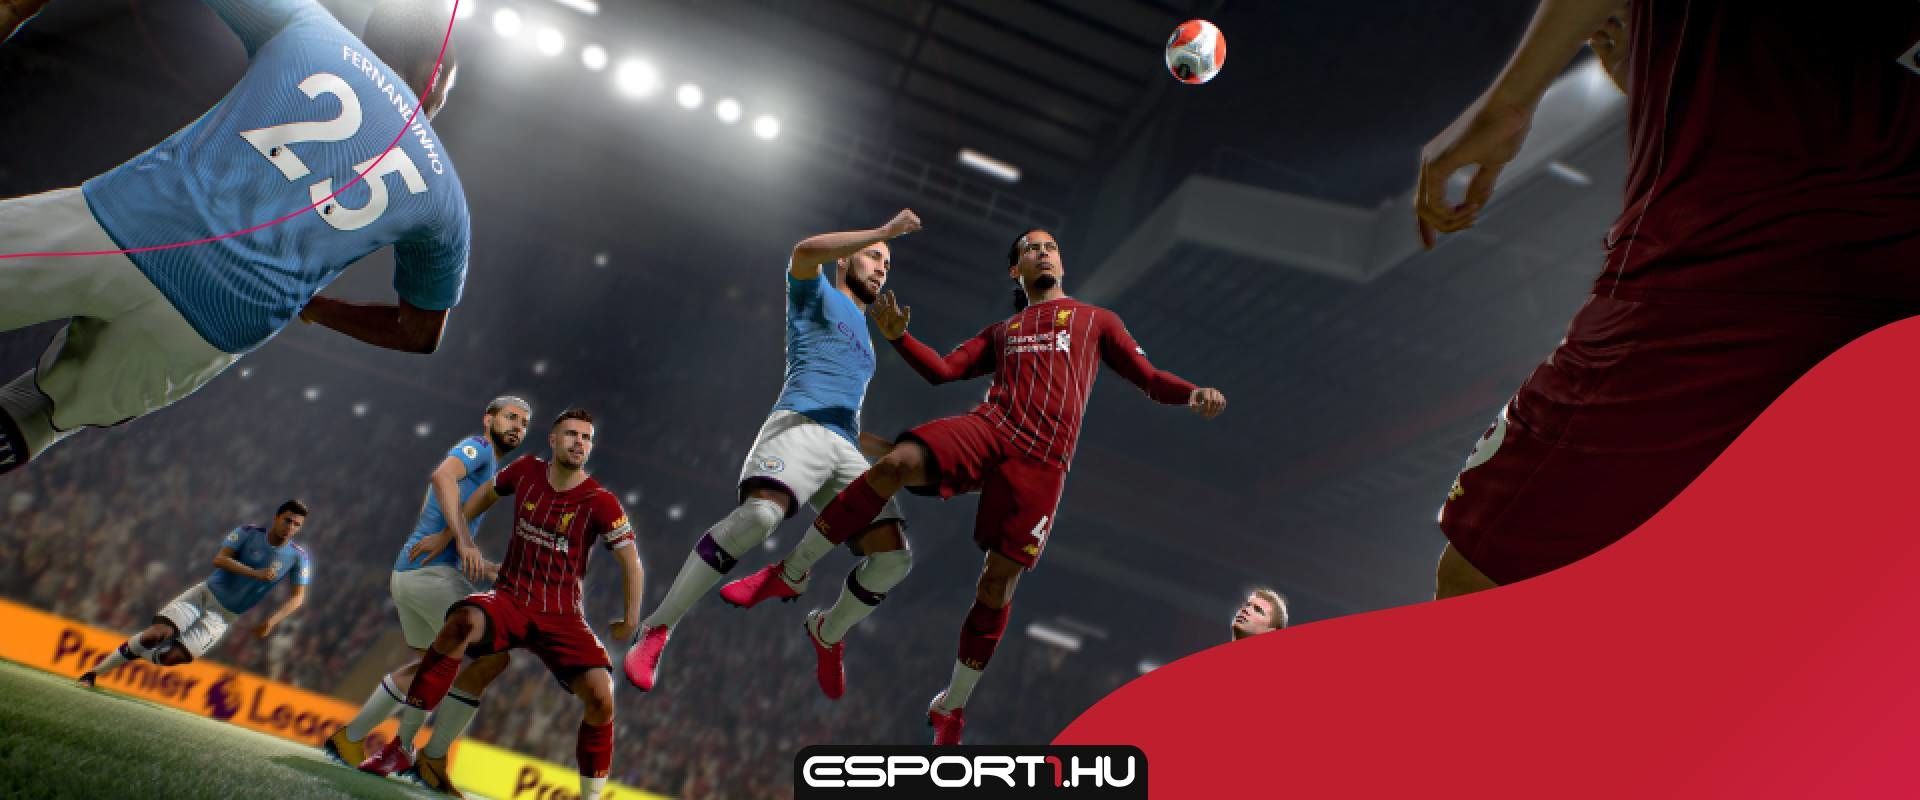 Jobb labdakezelés, cselek és pozícionálás, ezt hozta a FIFA21 gameplay trailere!